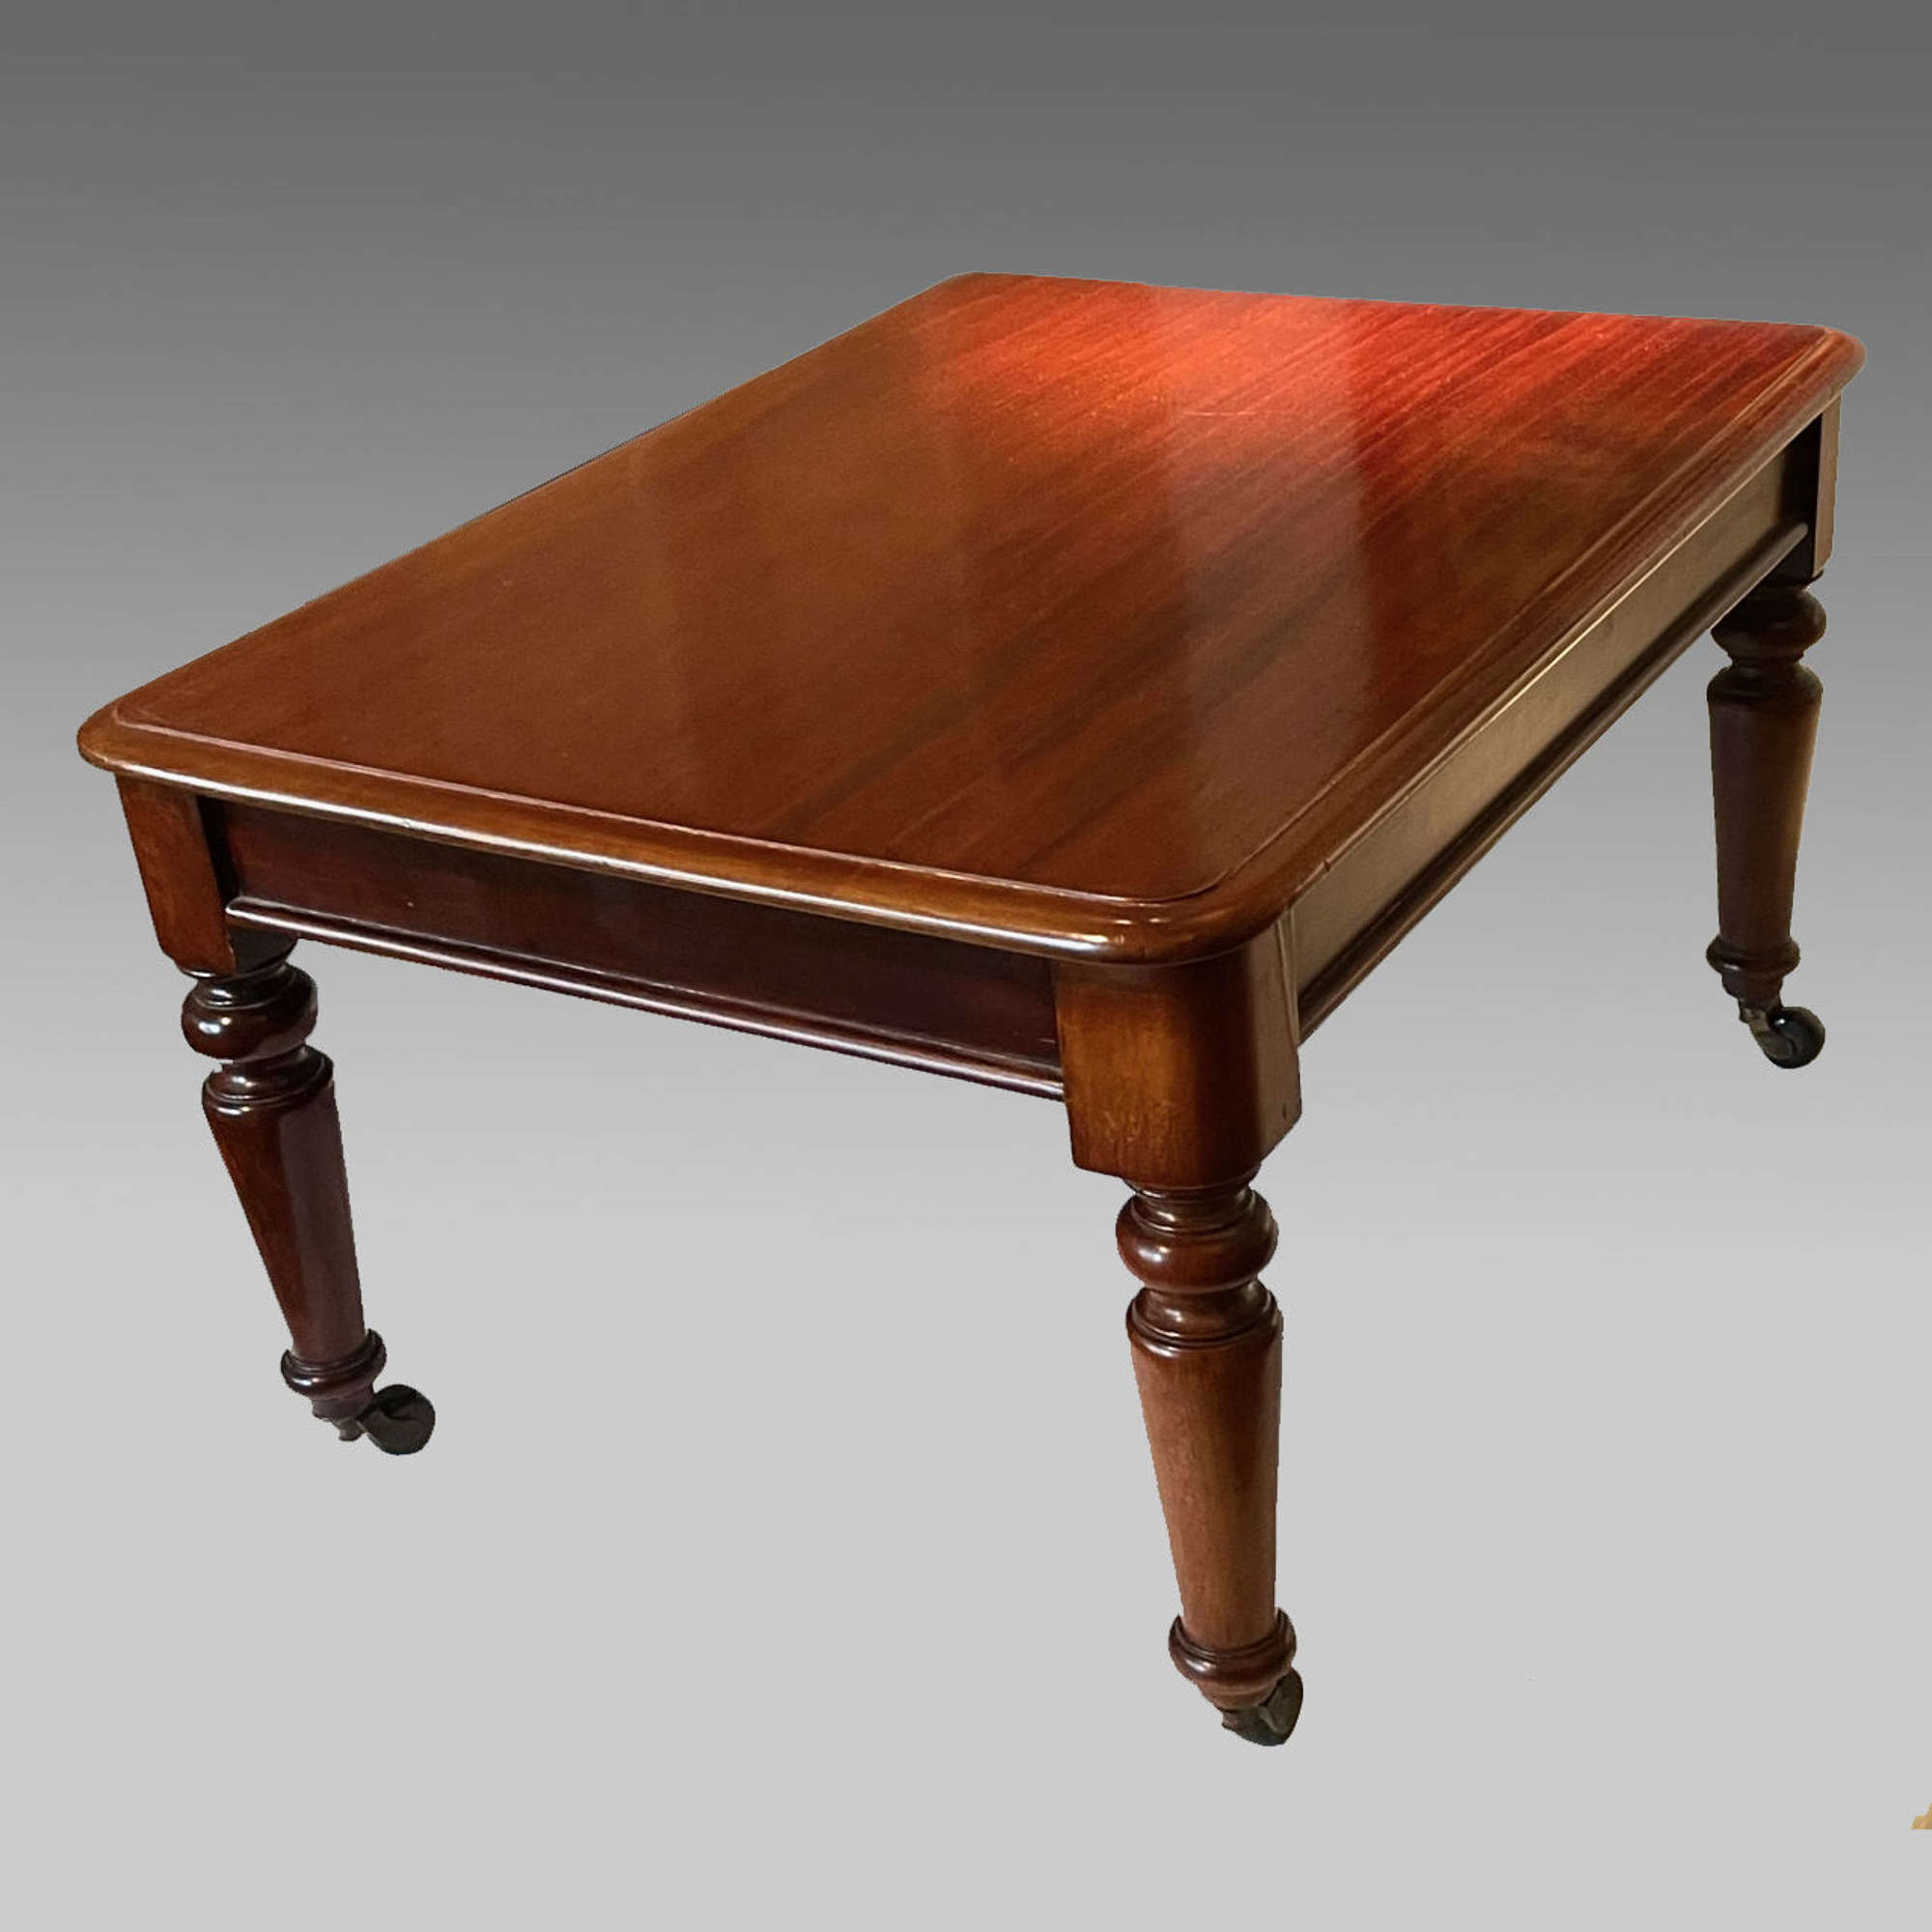 Irish miniature mahogany table